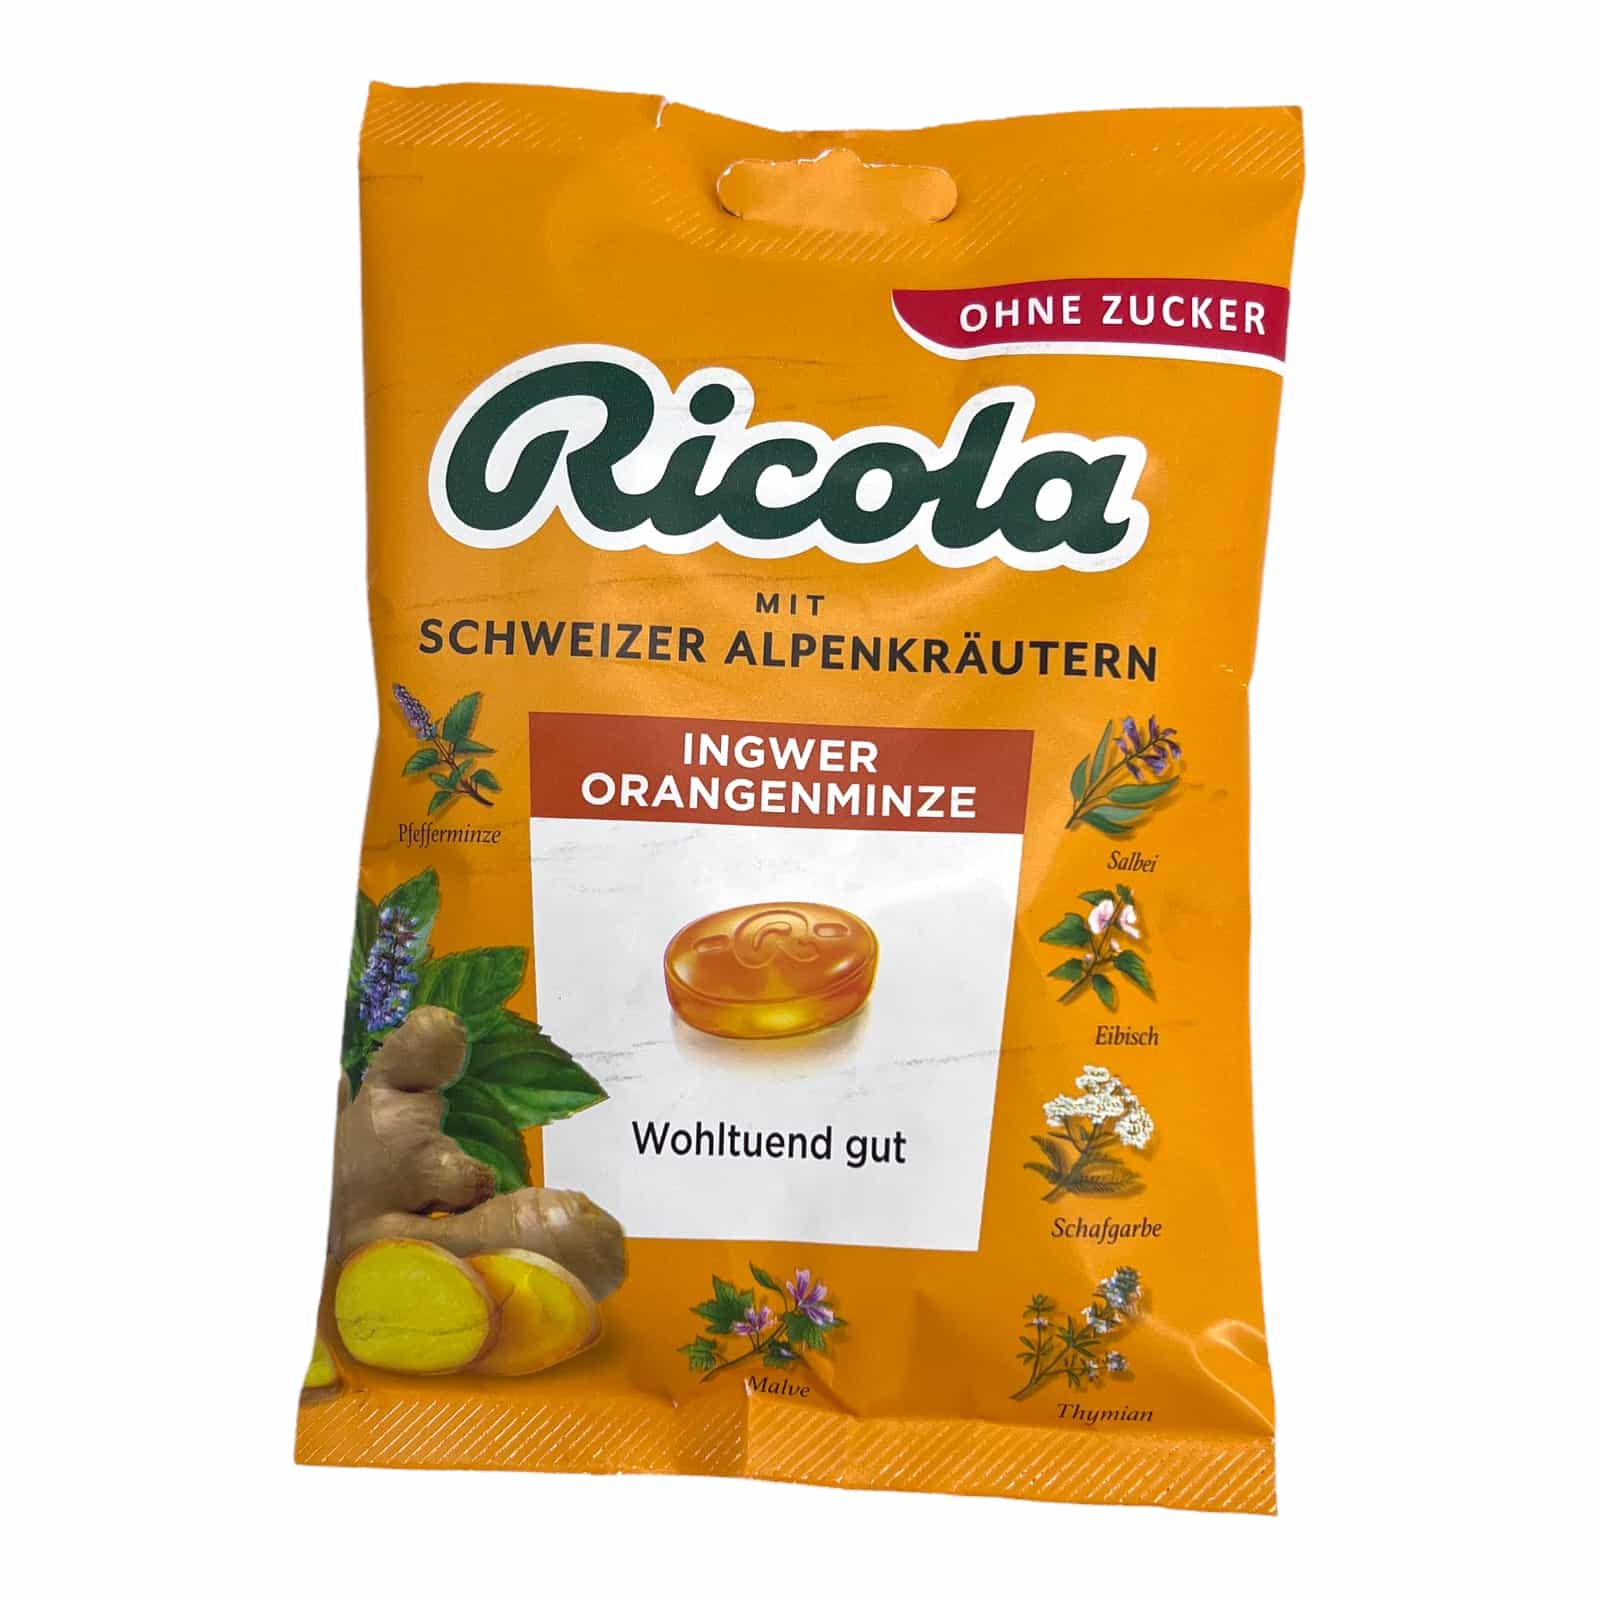 Ricola Ingwer-Orangenminze 75g